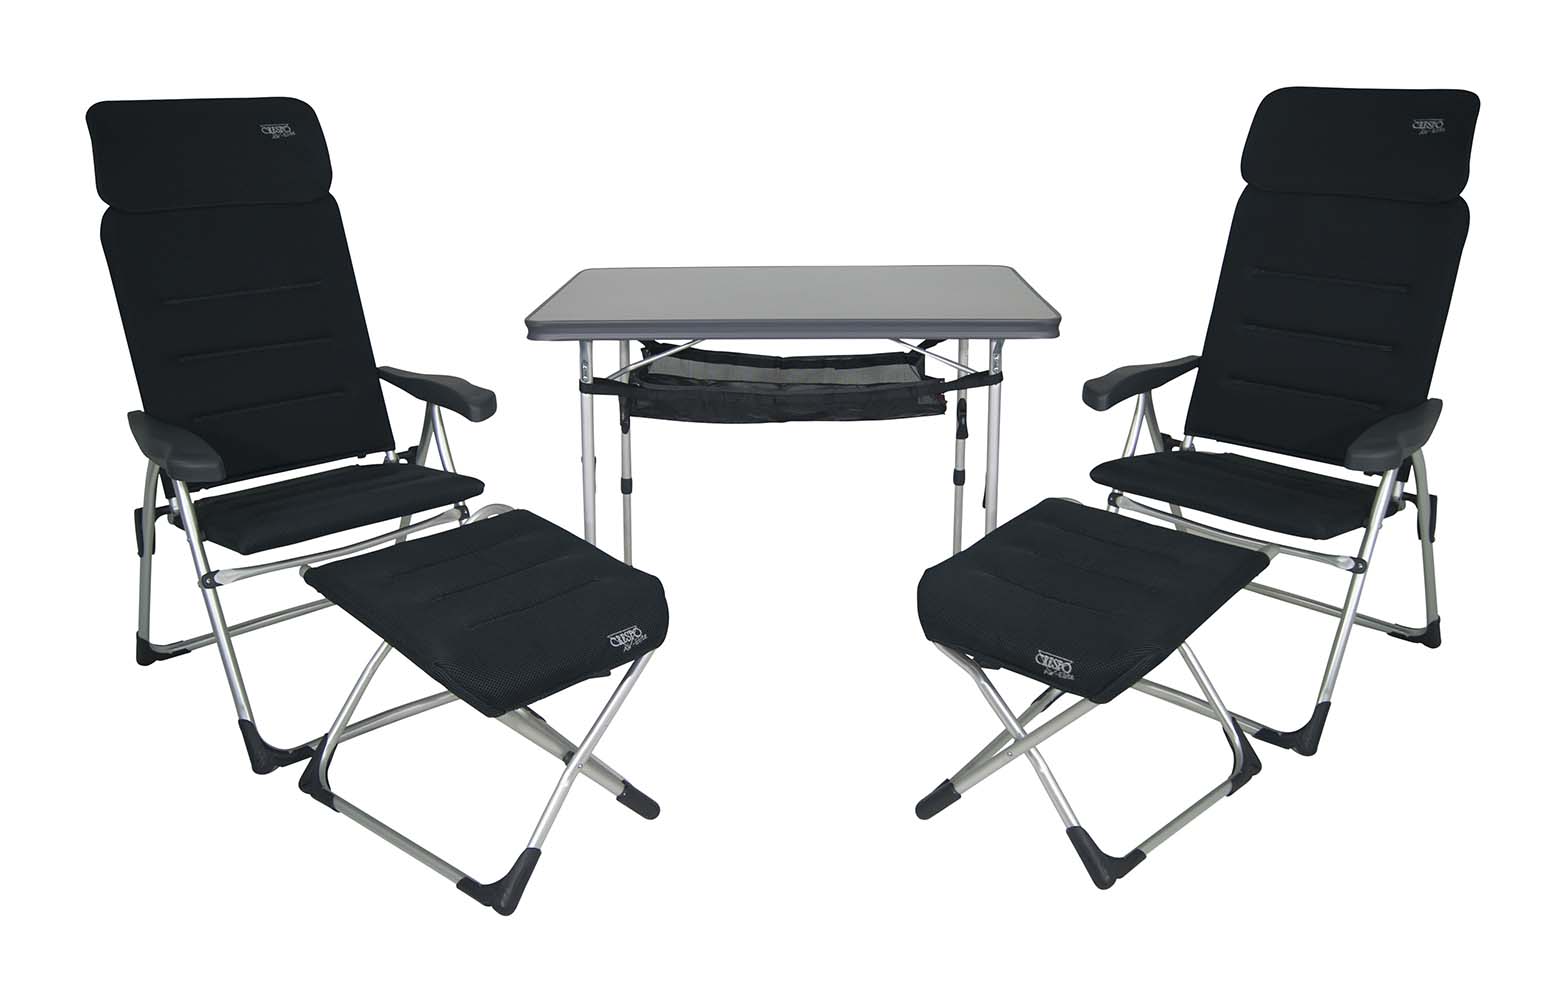 1104959 Een set bestaande uit 2 AA-213 Air-Elite Compact stoelen met bijbehorende voetenbanken, een tafel AL-246 met opbergnet en opberghoes. Zeer compacte en ideale set voor 2 personen. De set is zeer compact mee te nemen. Inclusief opberghoes. In totaliteit is de set compact opvouwbaar en maar 26 cm dik.